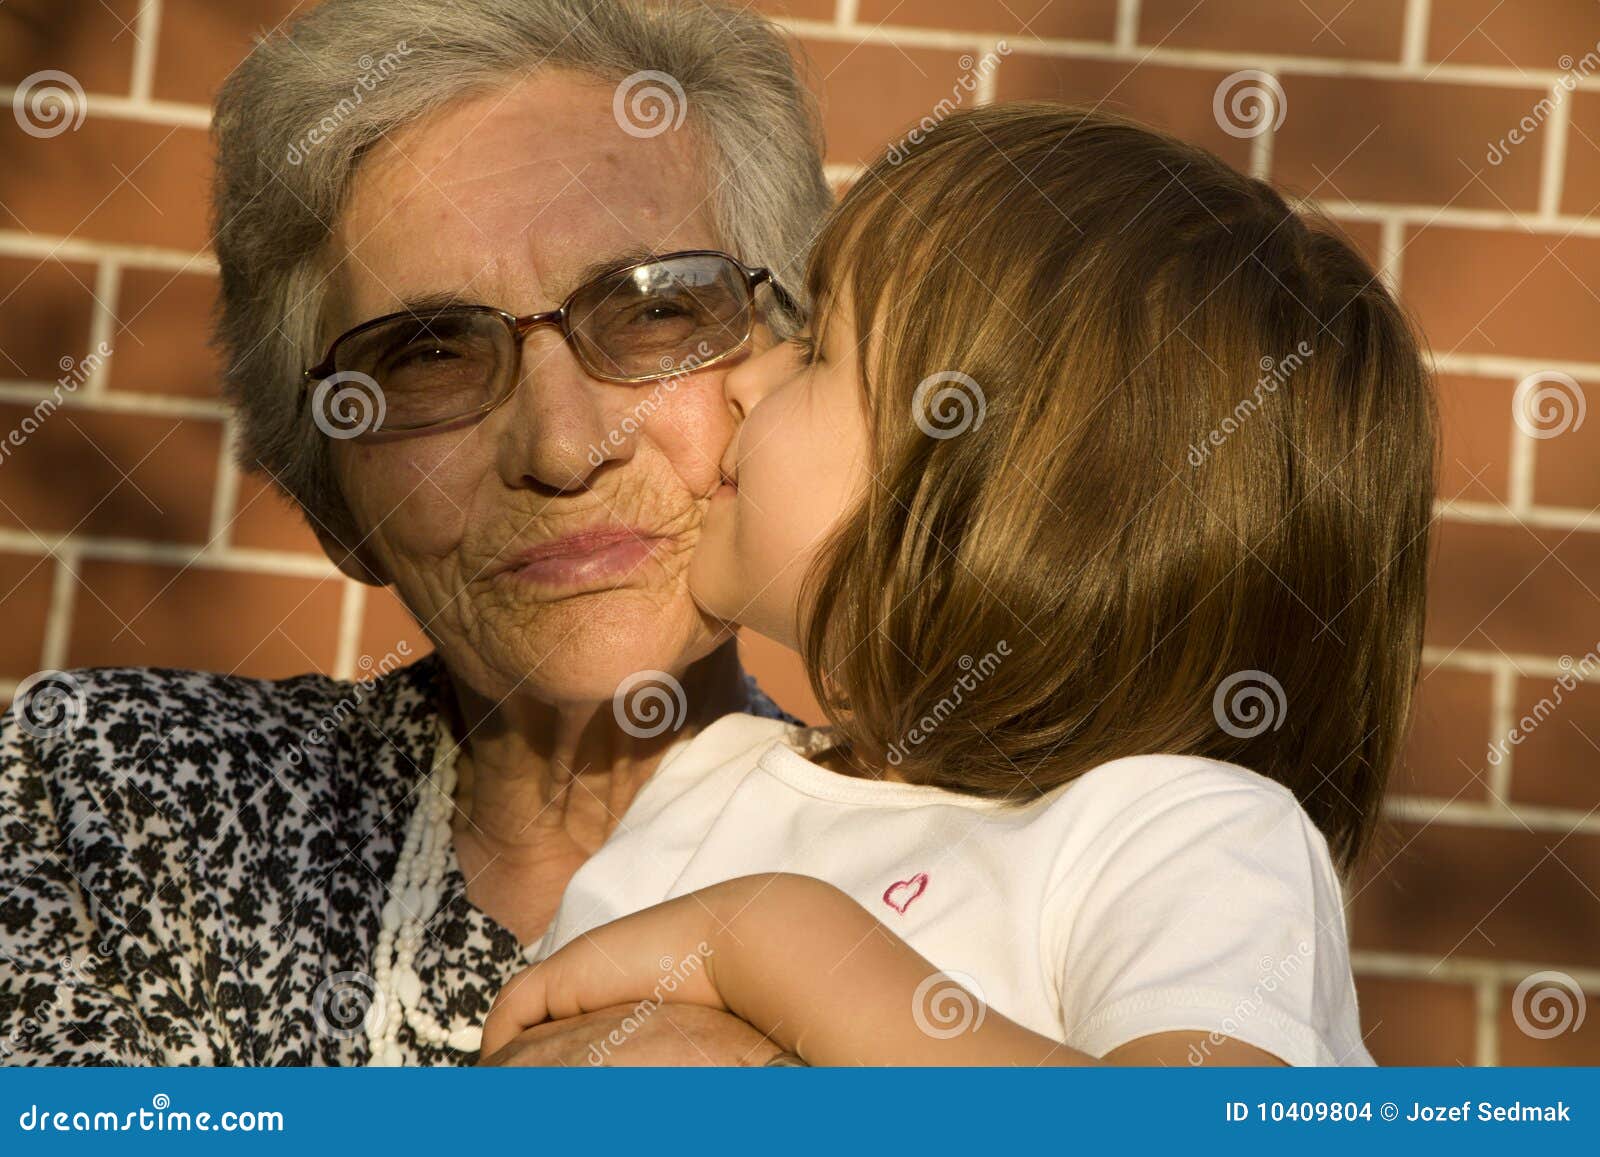 эротика бабушек и малолеток фото 25